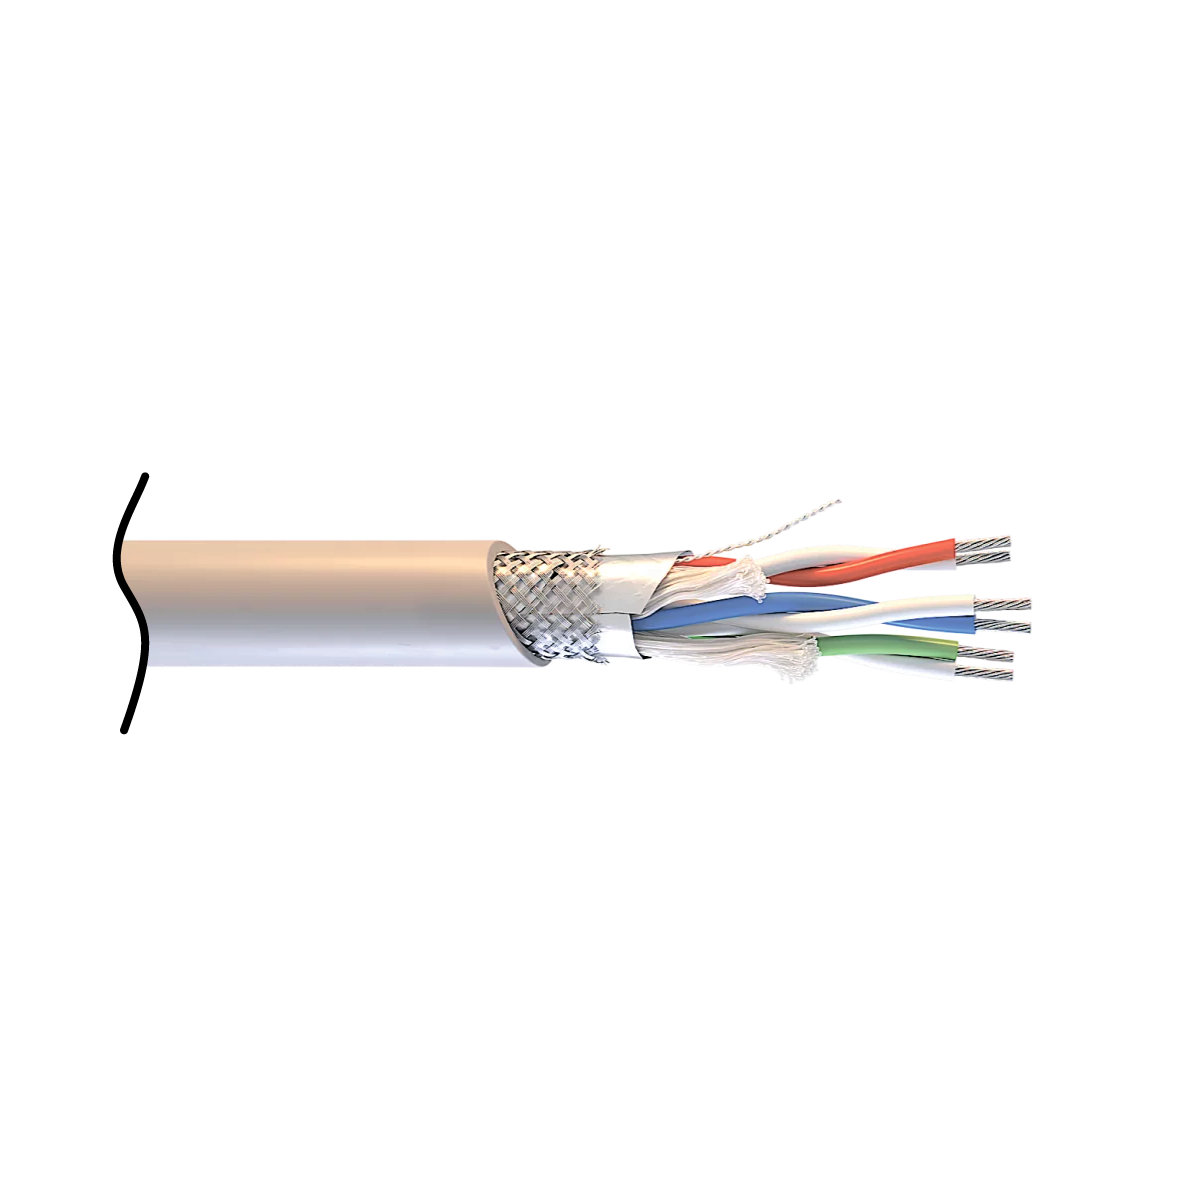 Интерфейсный кабель СегментКИ-485 для промышленного интерфейса групповой прокладки